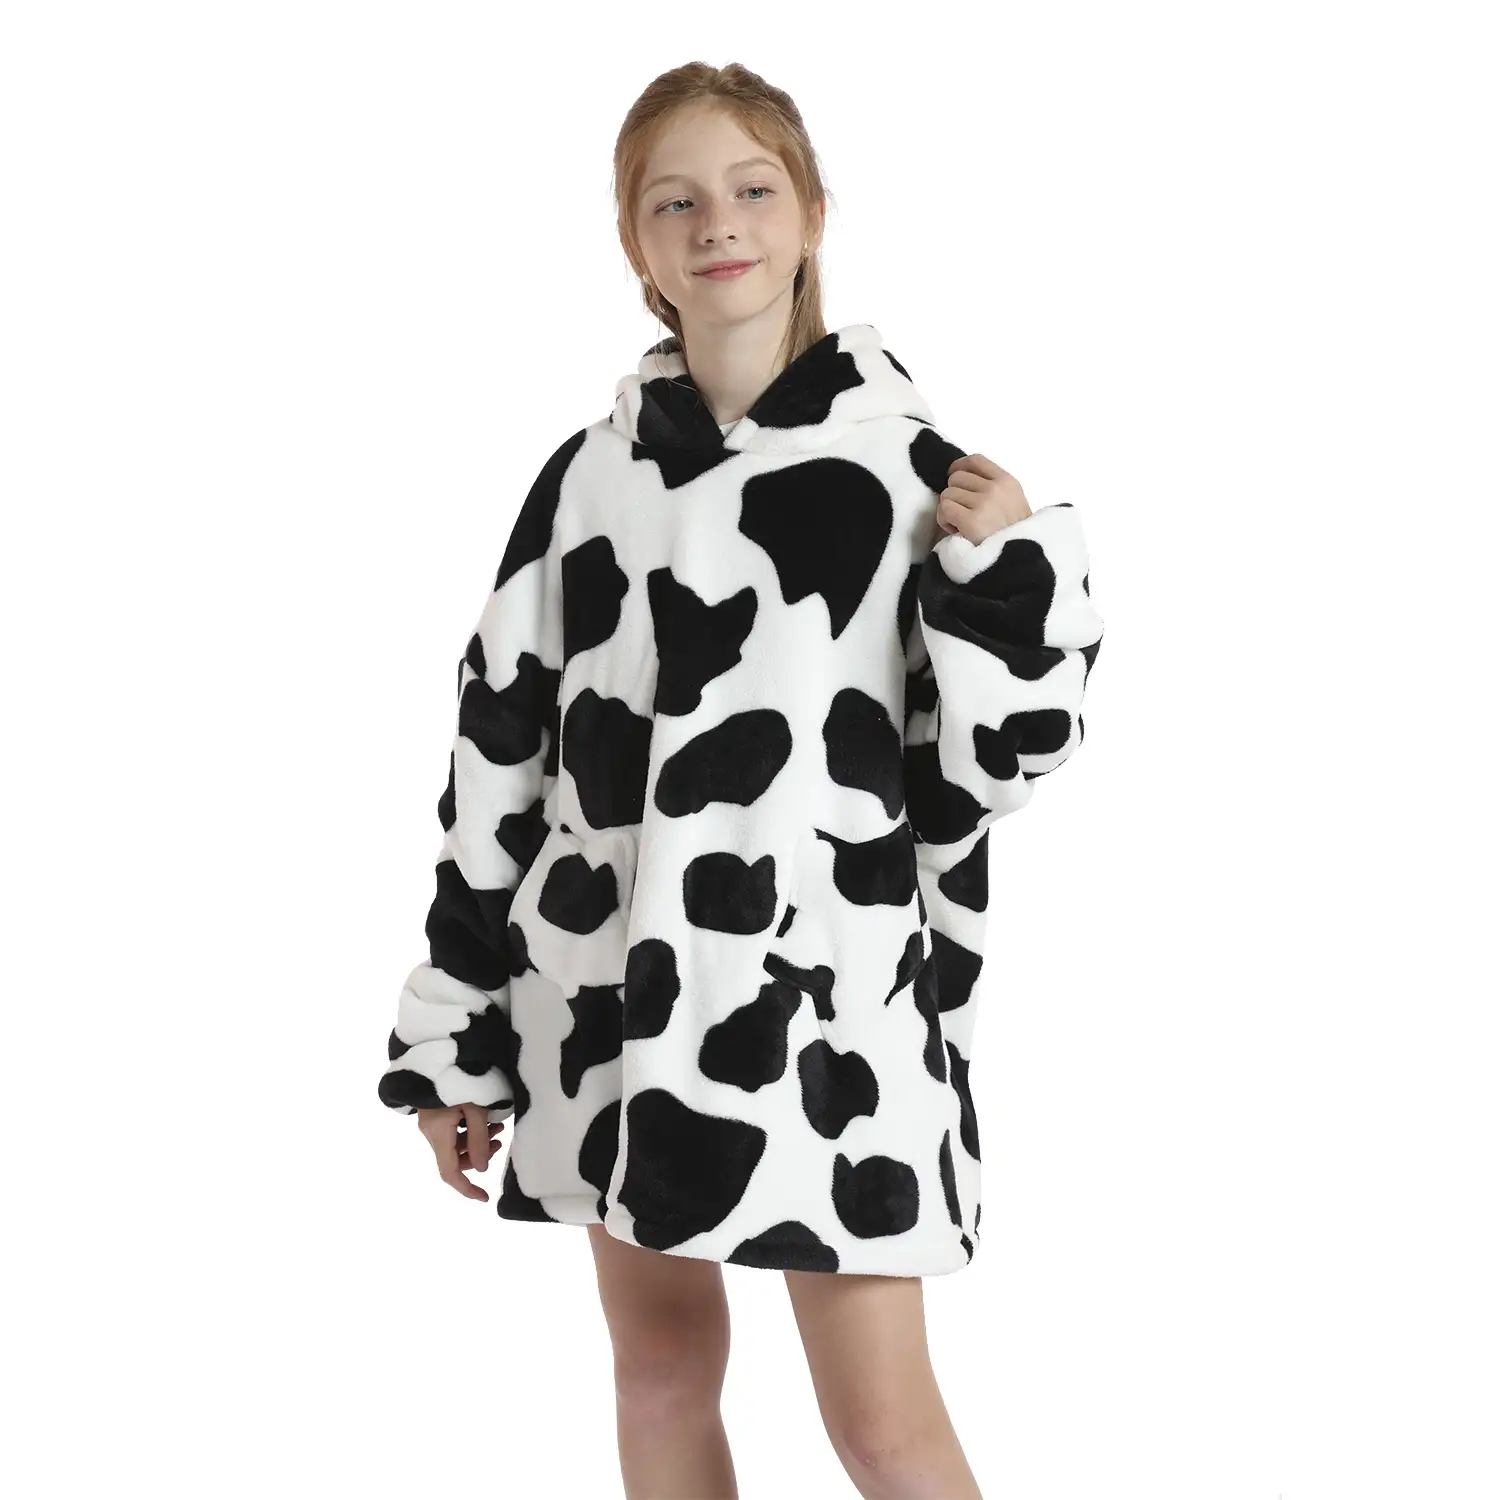 Bata infantil estilo sudadera y manta de felpa extrasuave. Bolsillos frontales. Diseño Vaca